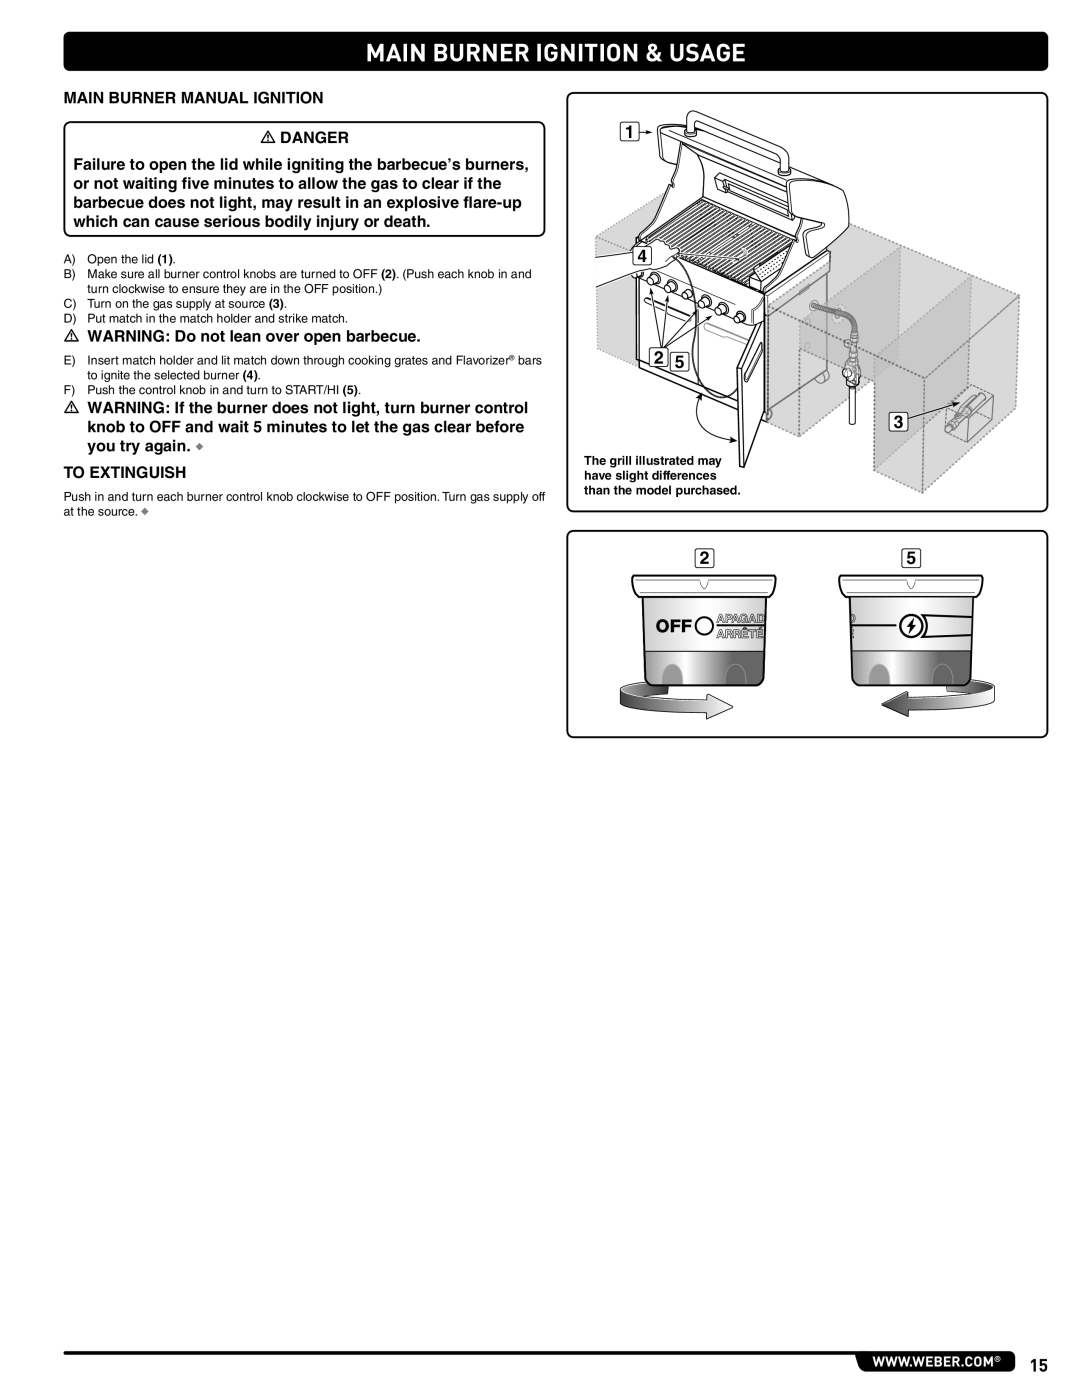 Weber 56576 manual Main Burner Ignition & Usage 